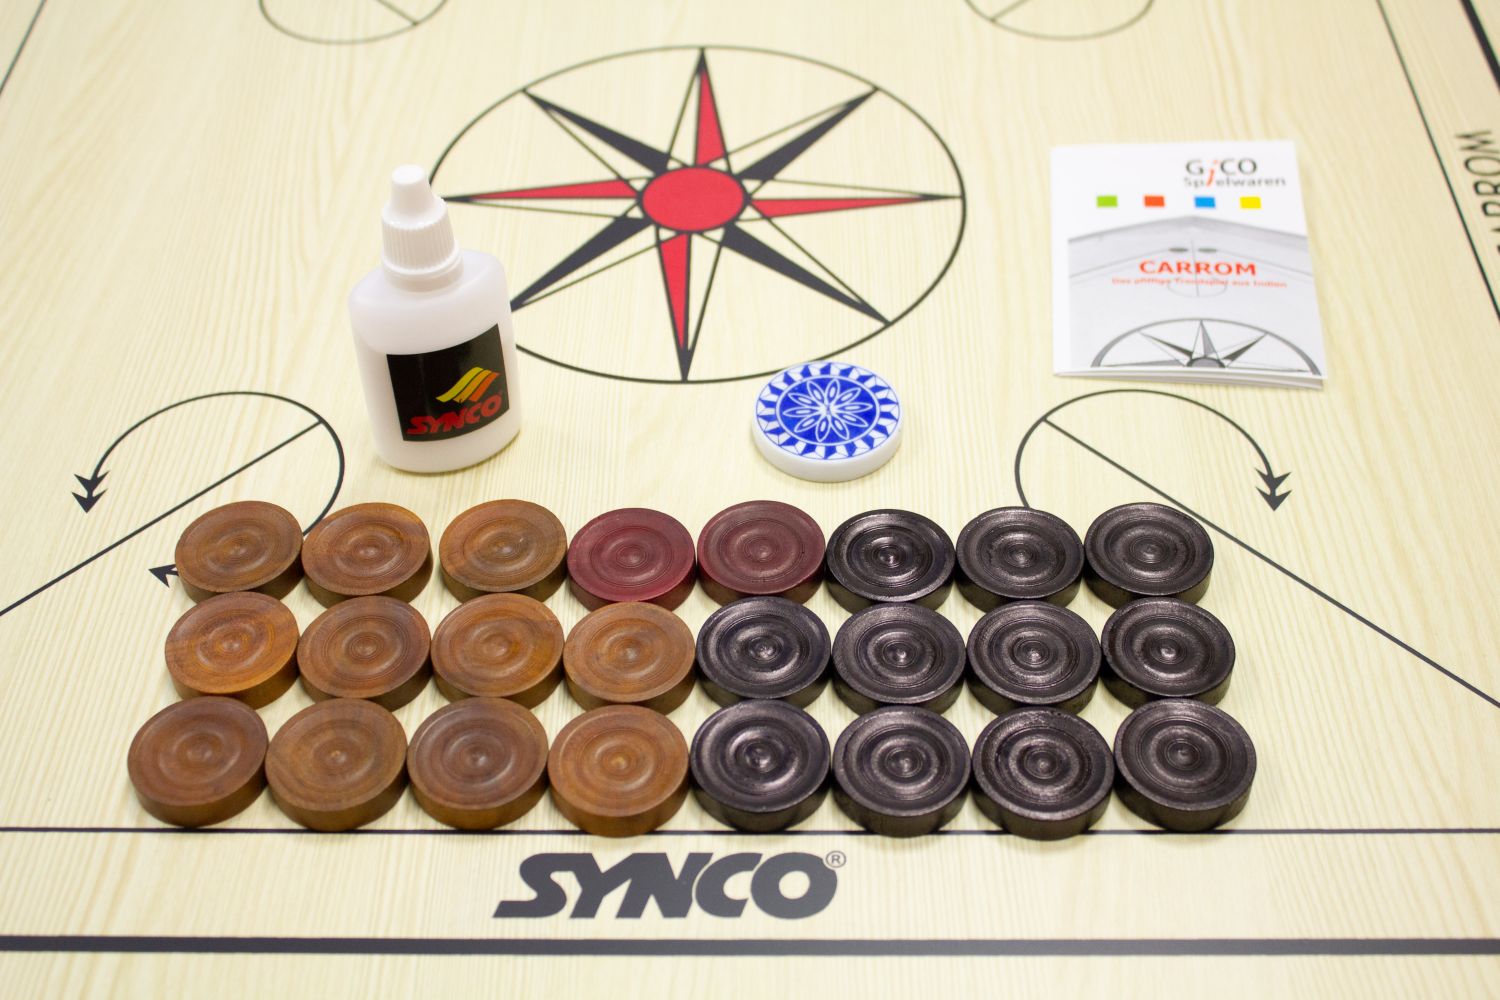 GICO Carrom Board Turnier 83 cm - Spielbrett Komplettset mit Steinen, Tasche & Gleitpulver 2983